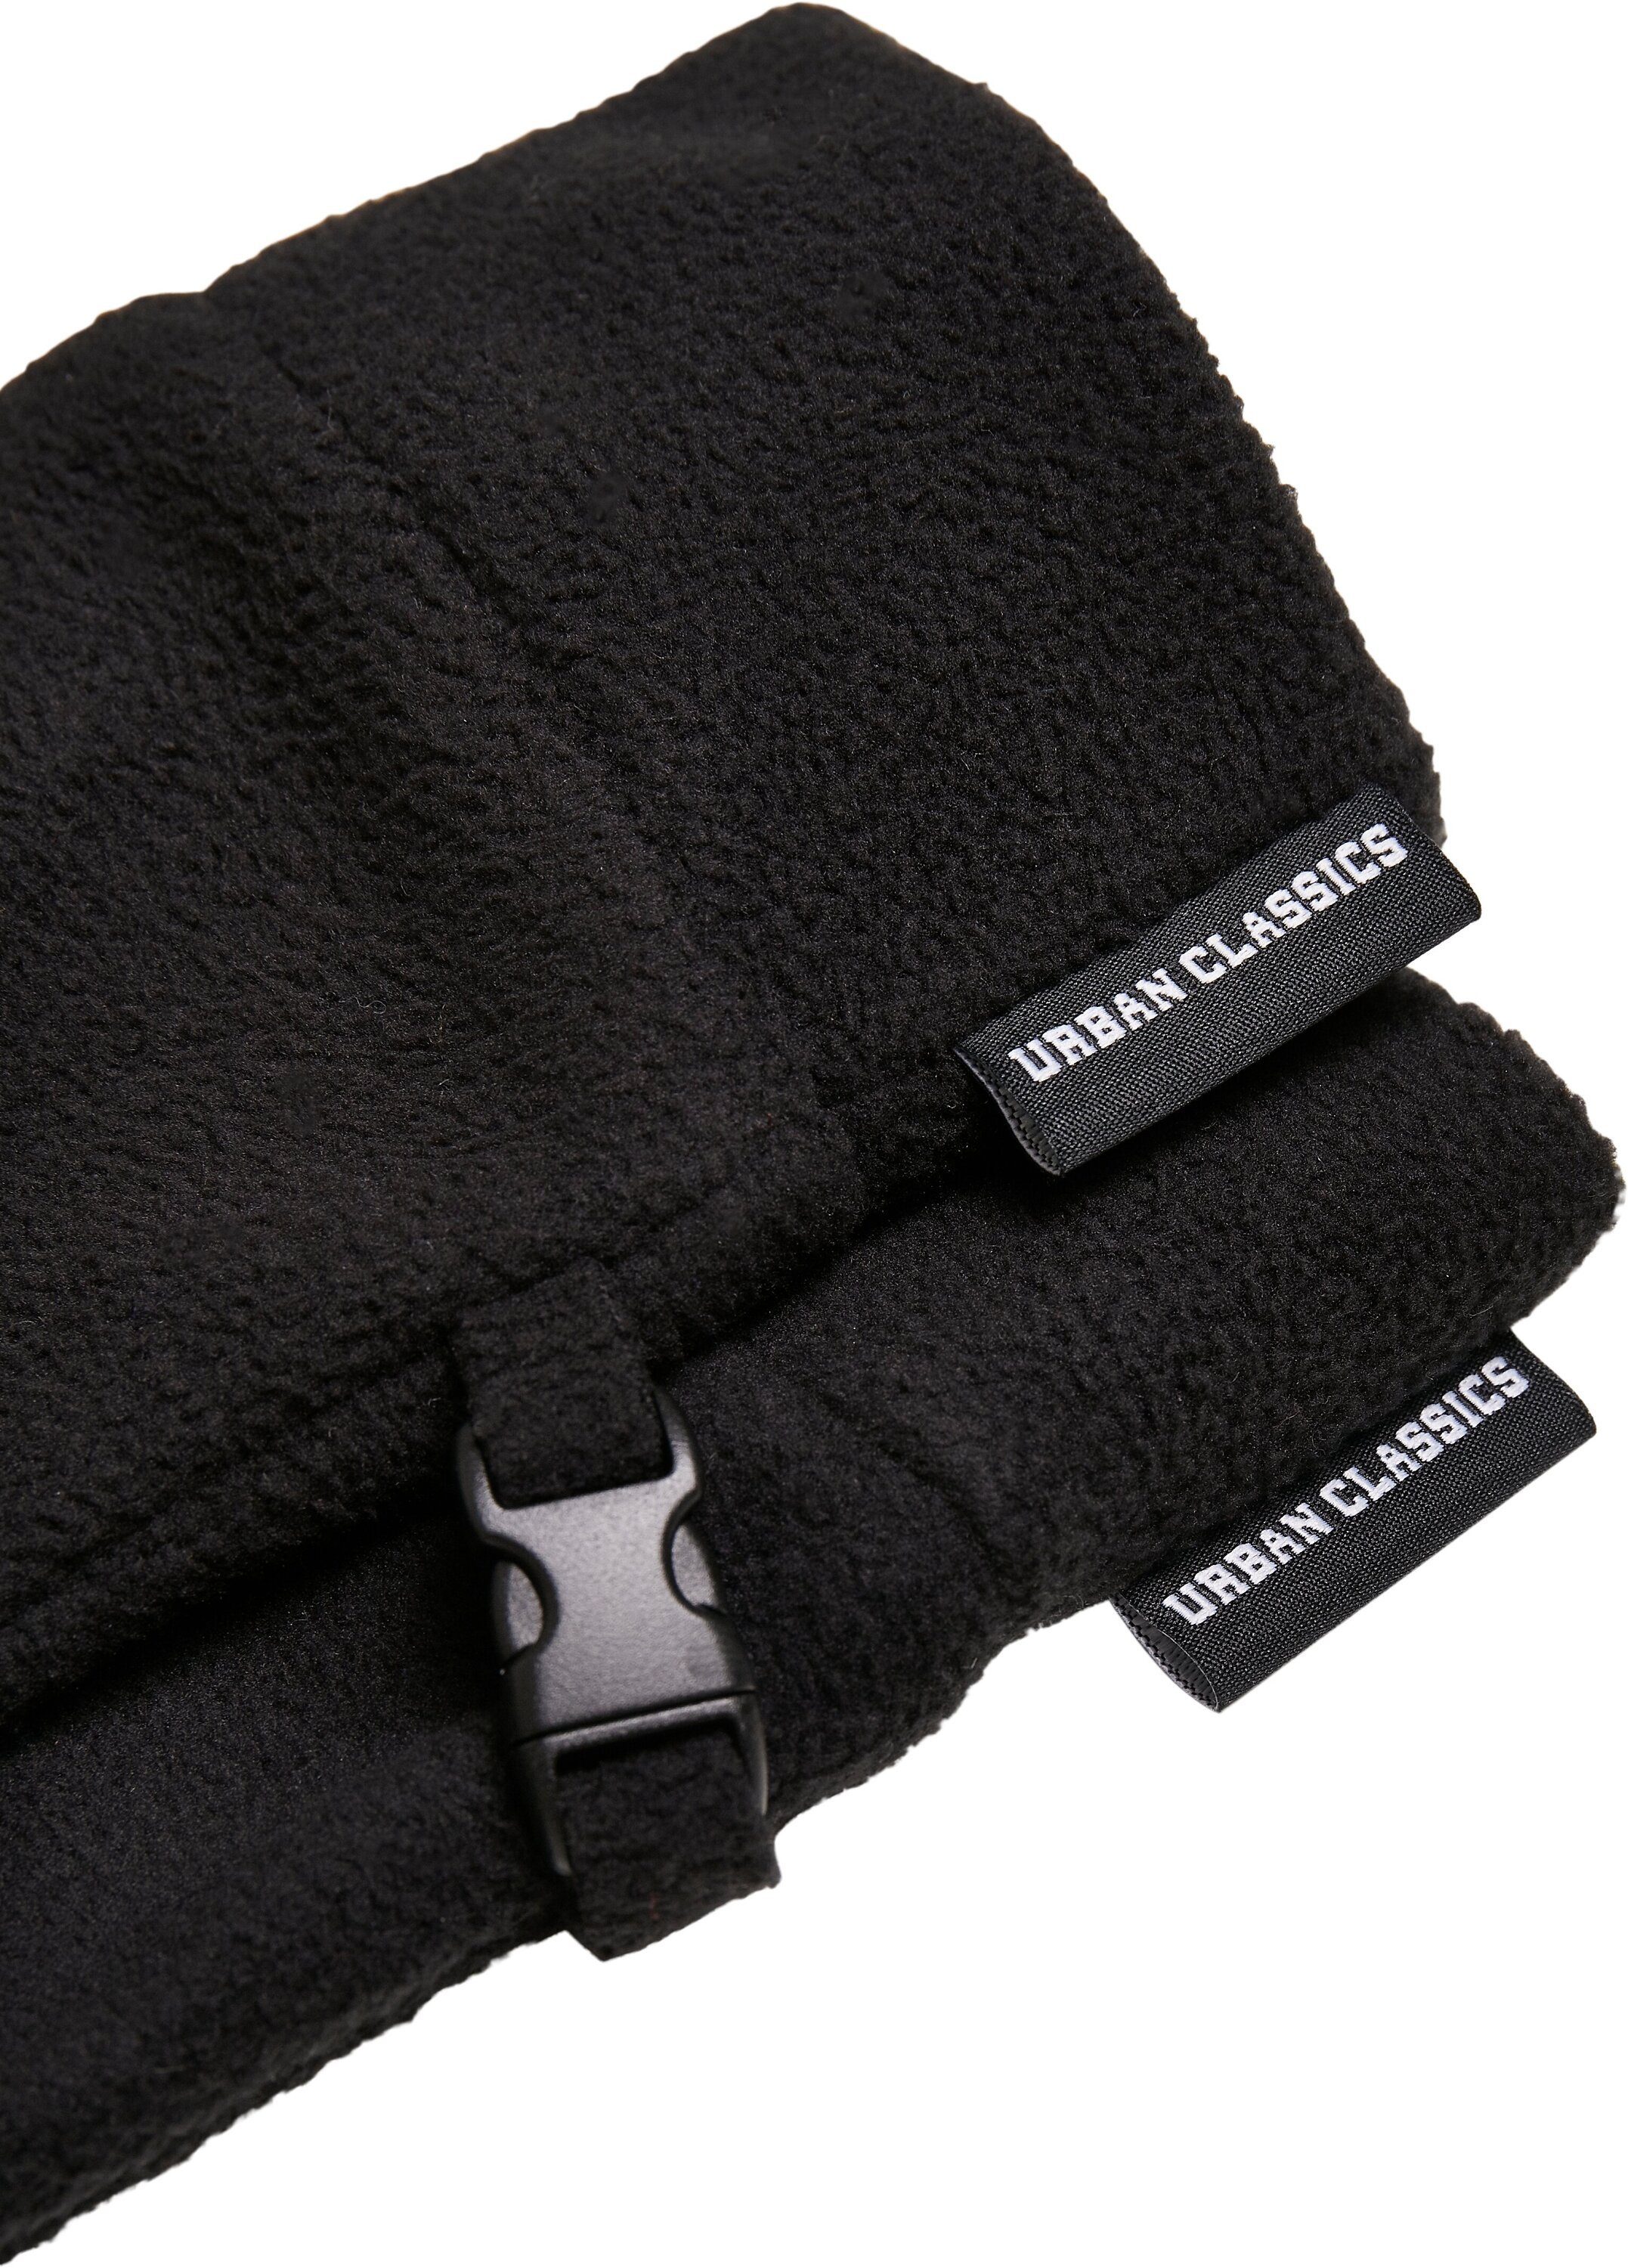 Baumwollhandschuhe Winter CLASSICS Fleece Set Accessoires URBAN